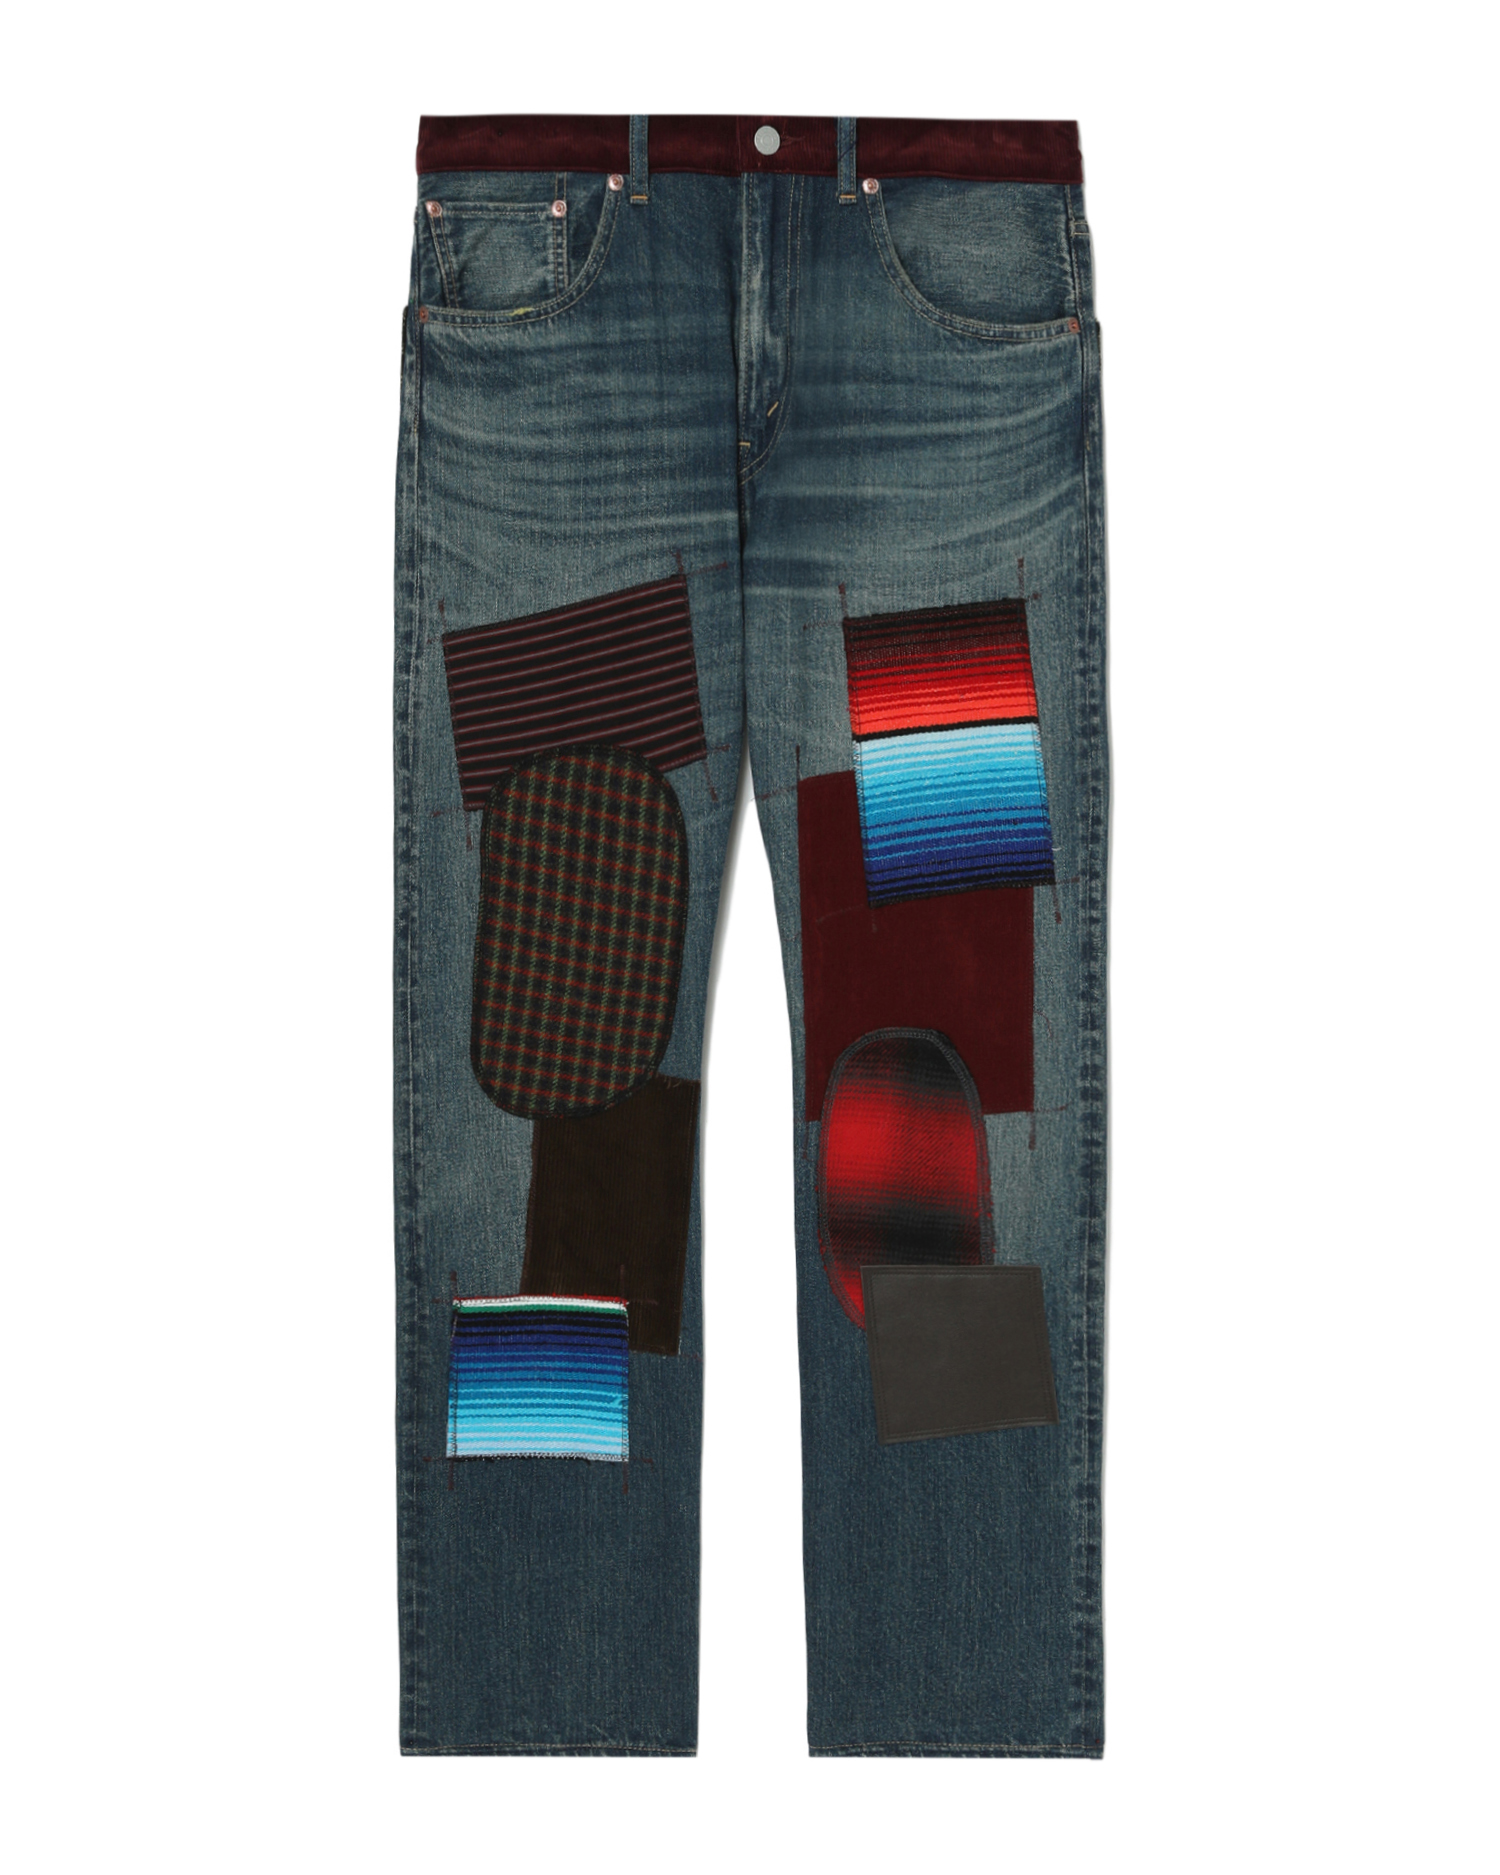 x levi's patchwork jeans